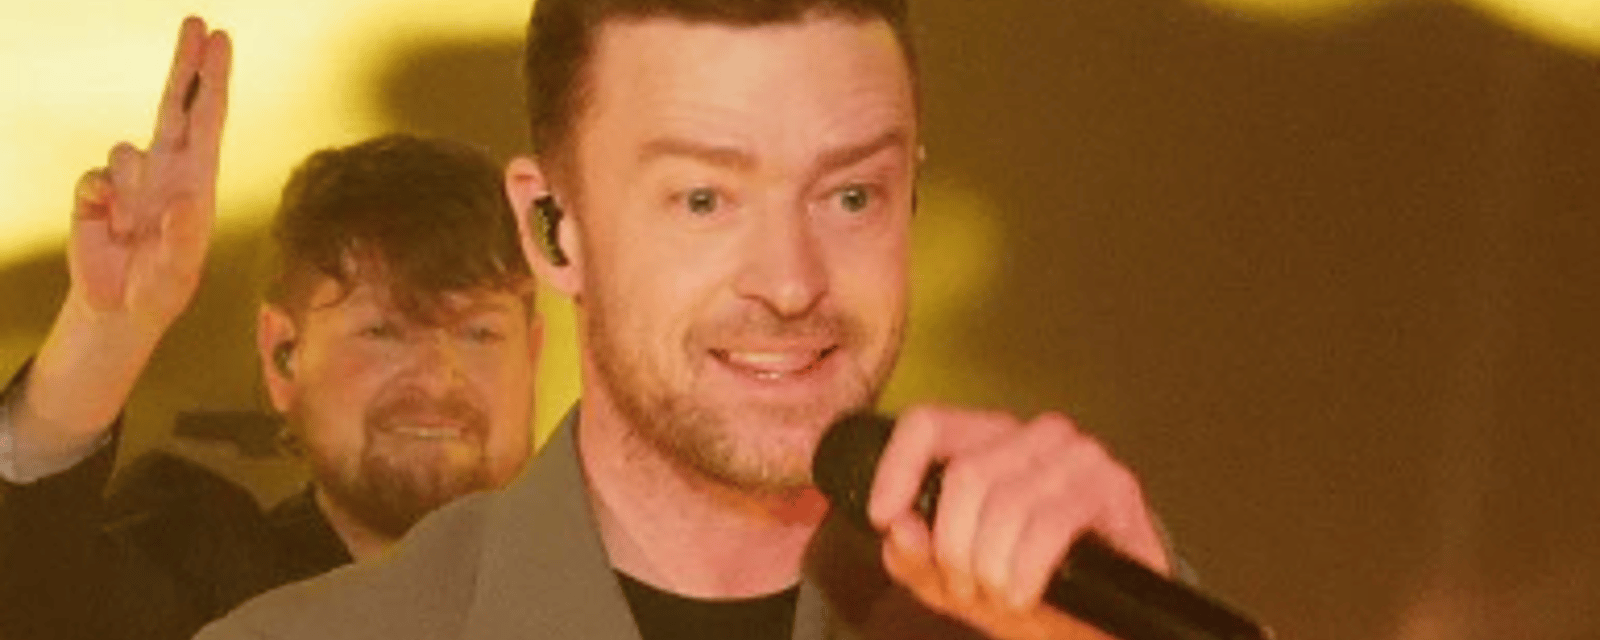 Justin Timberlake est dans l'eau chaude et il pourrait faire face à des accusations